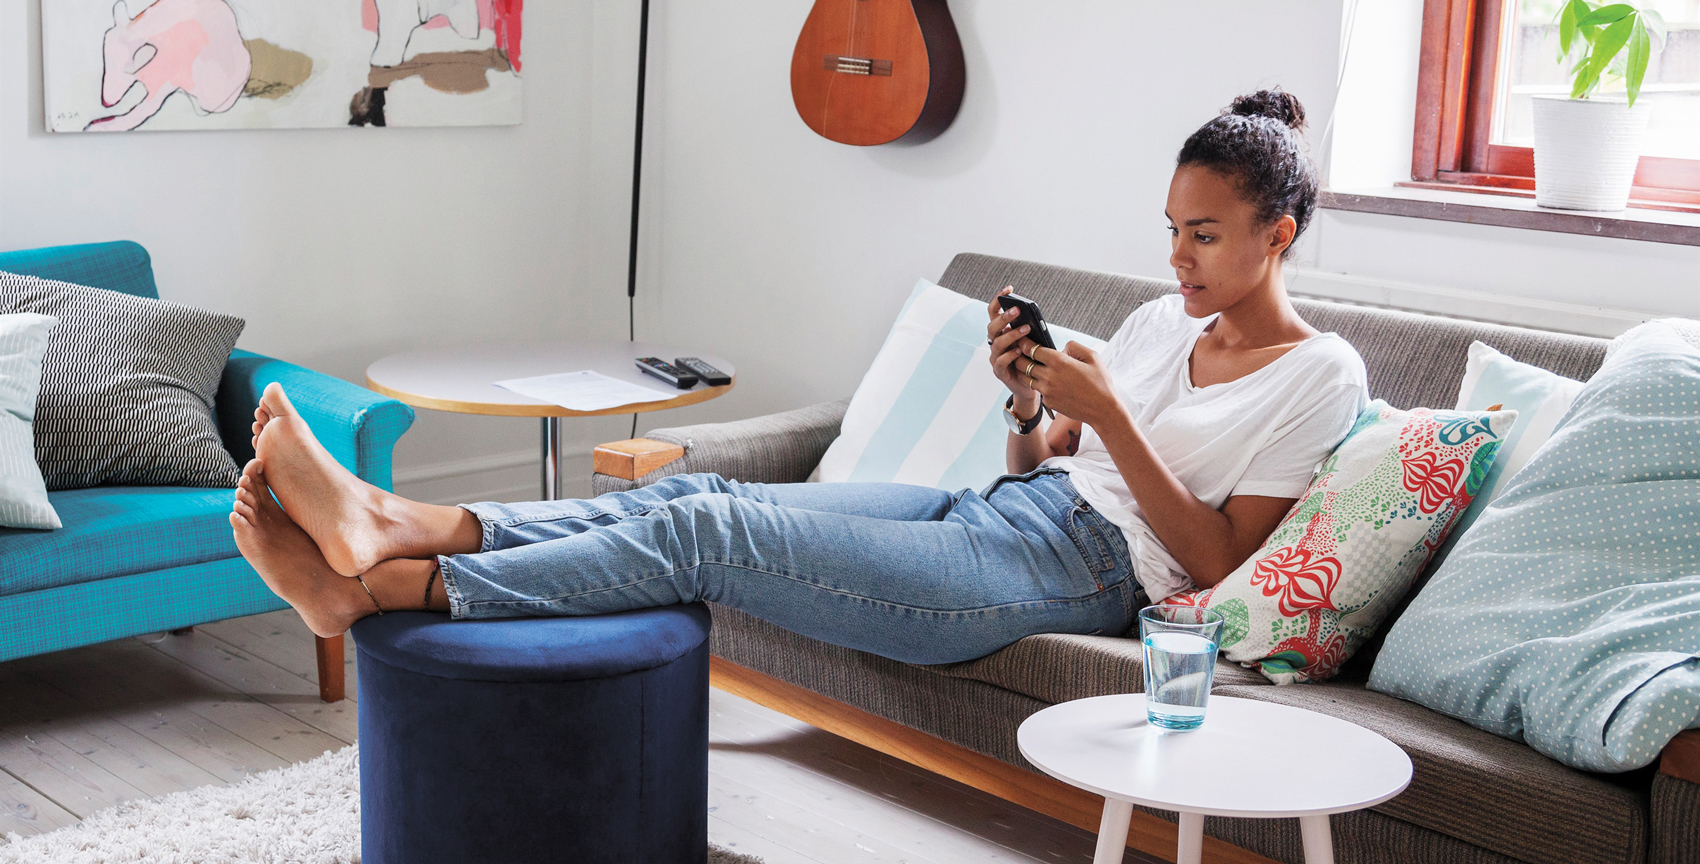 Kvinna i tjugoårsåldern sitter i soffan med benen på en puff och läser på sin mobiltelefon.